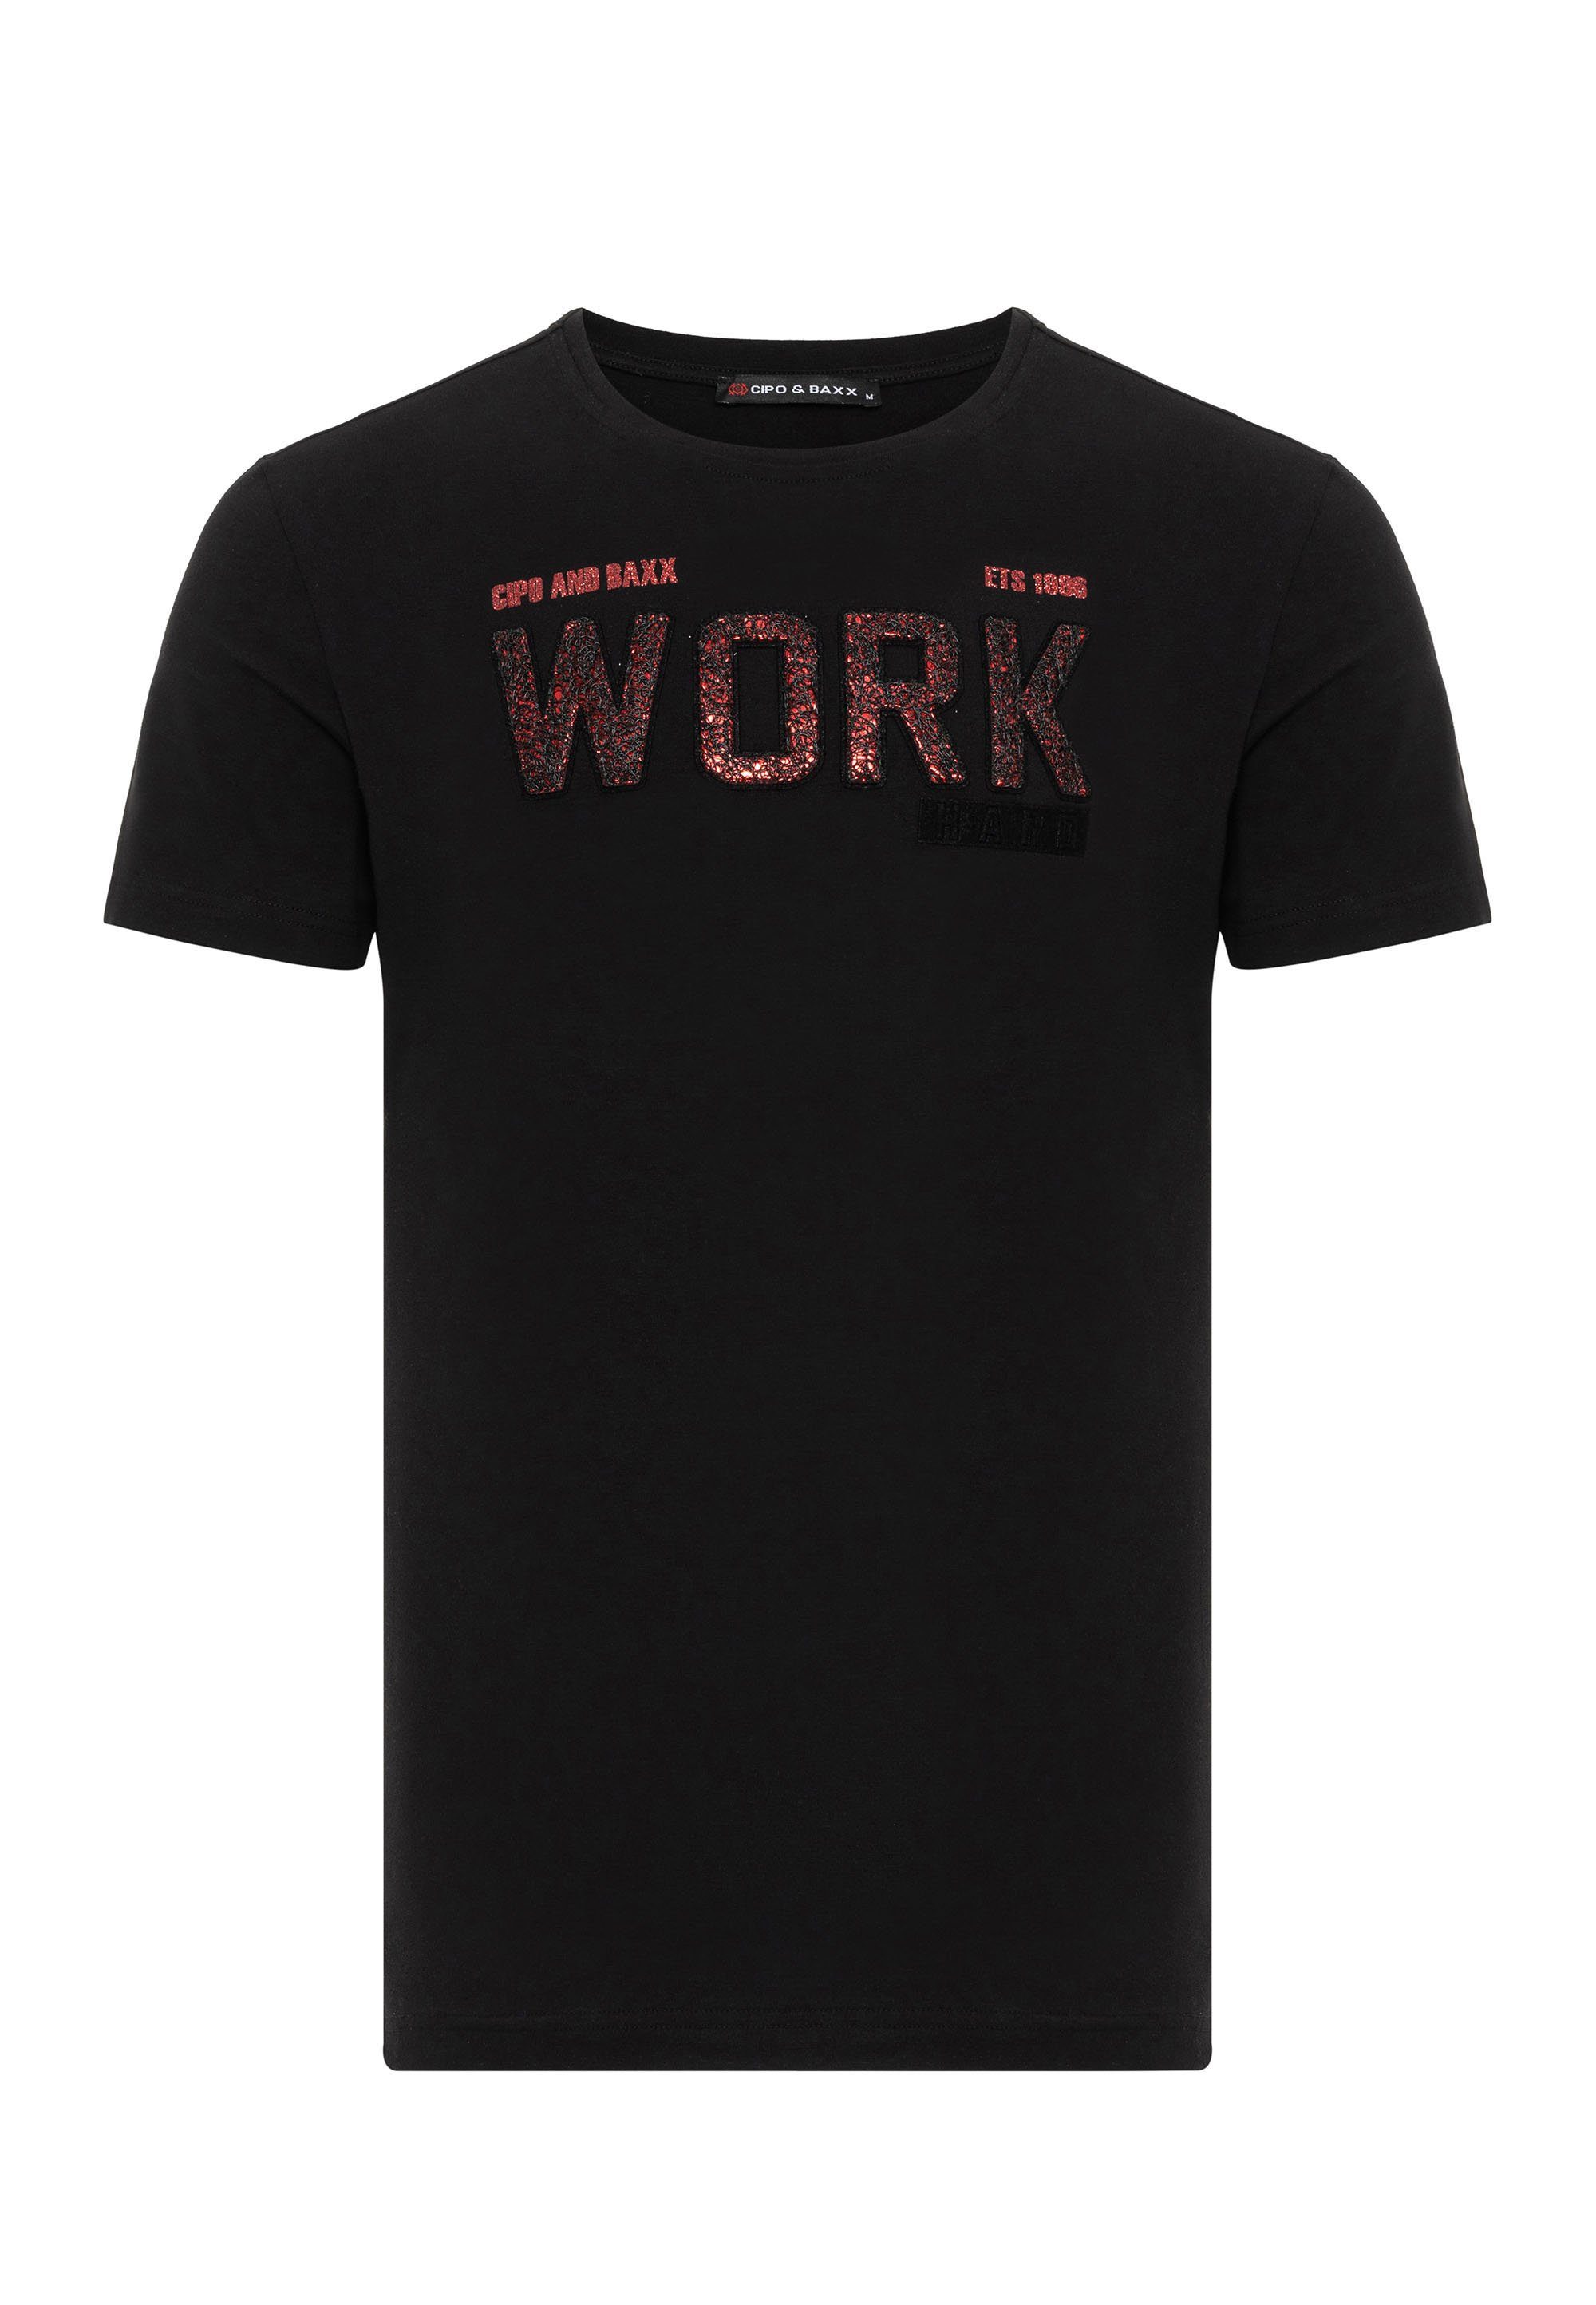 & Baxx coolem Work-Aufdruck Cipo mit T-Shirt schwarz